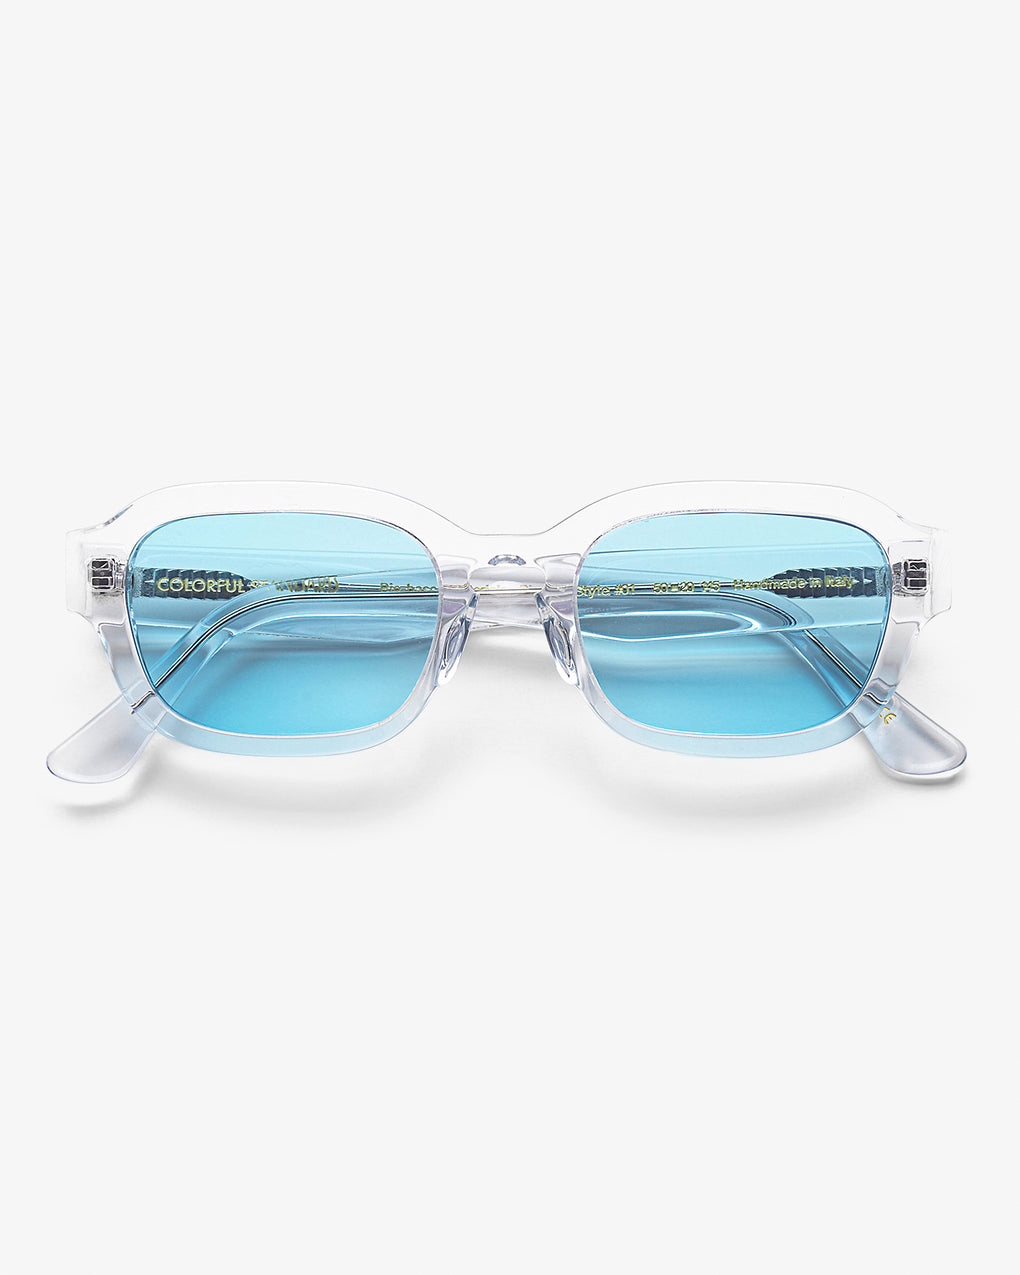 Sunglass 01 - crystal clear blue